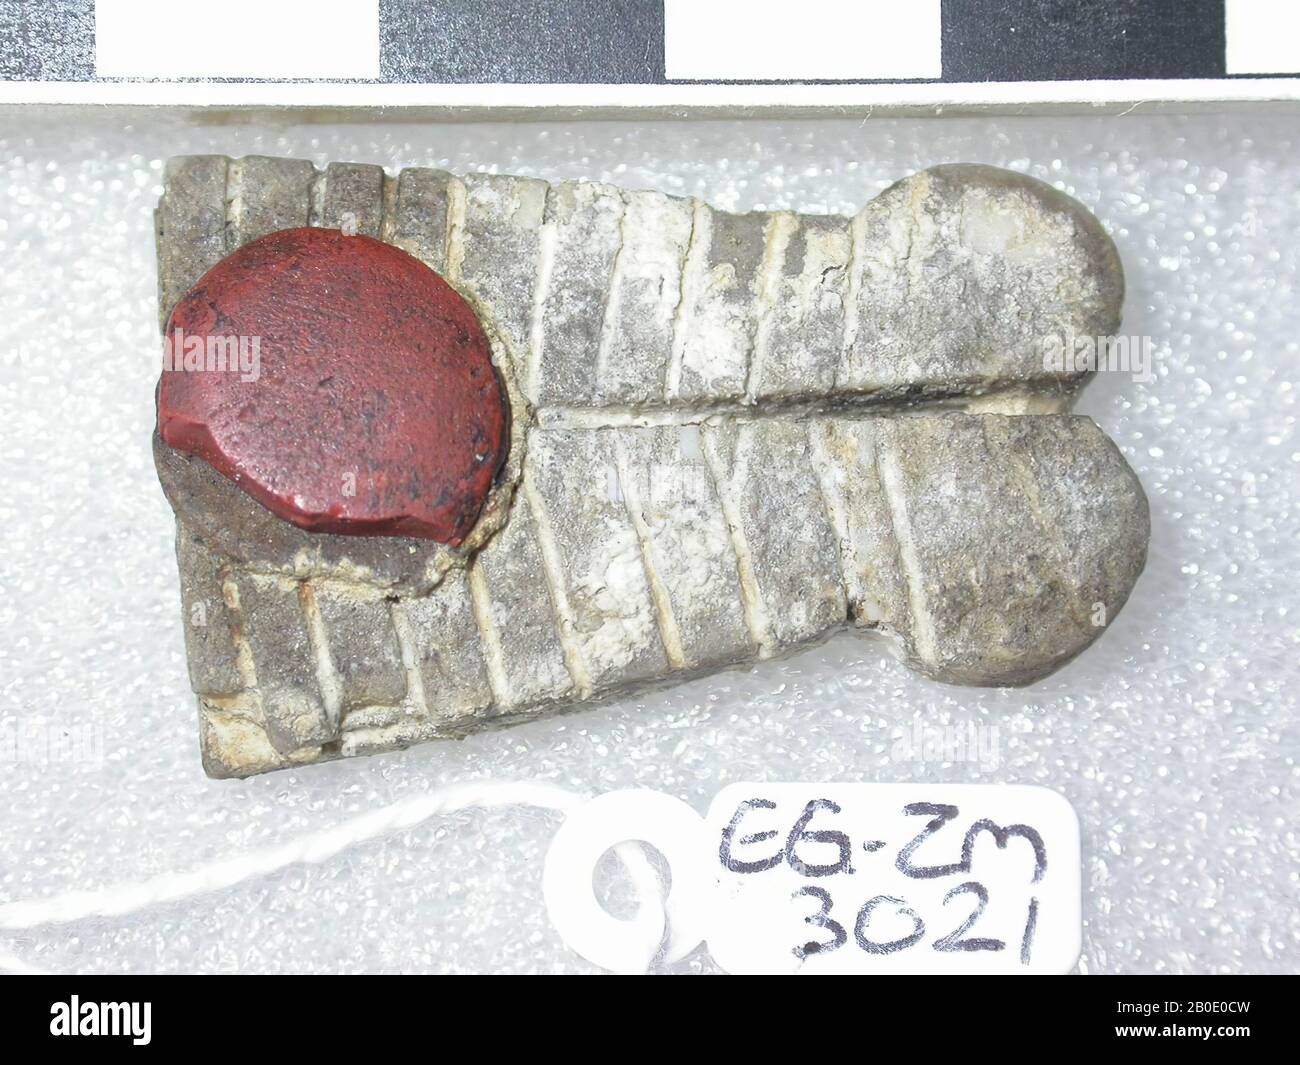 Egypte, amulet, objet, pierre, marron clair, 3,5 cm, emplacement, Egypte Banque D'Images